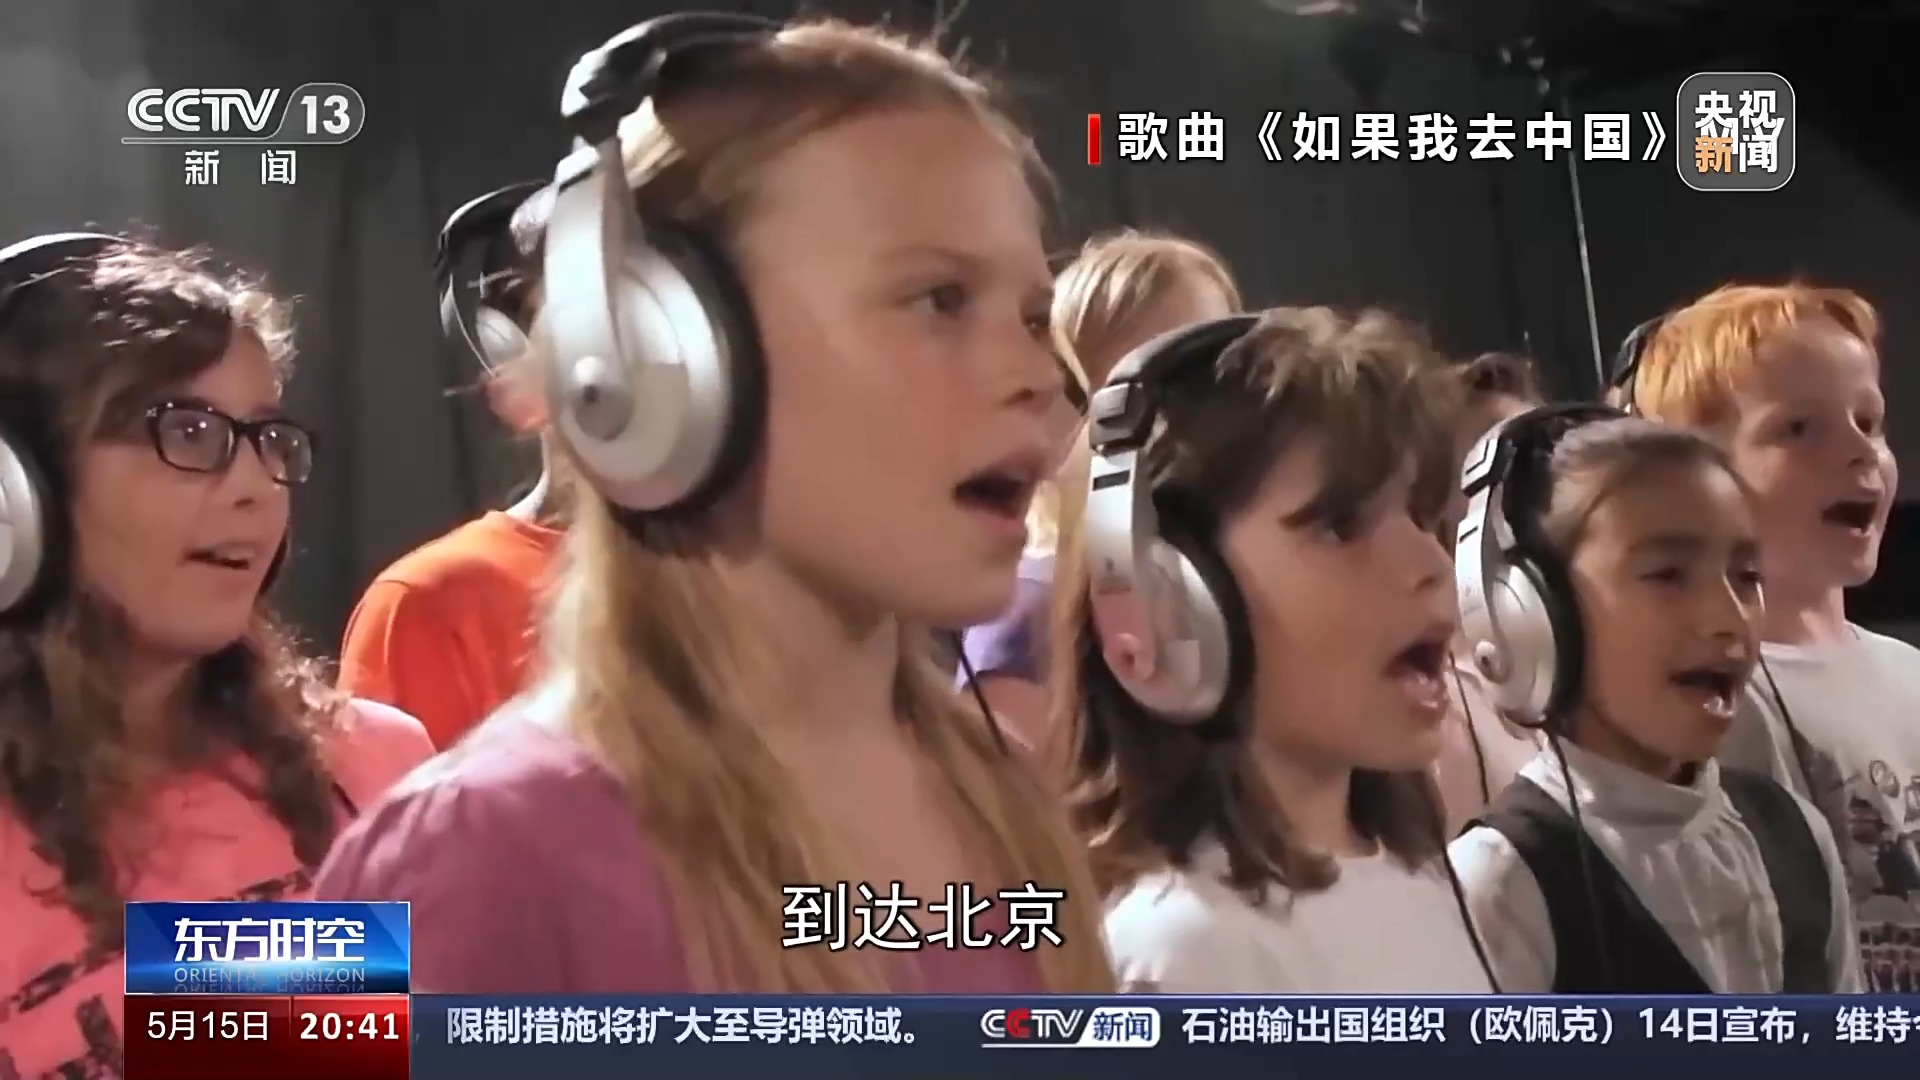 歌声传递友谊 来看中国孩子们的法国之旅Vlog